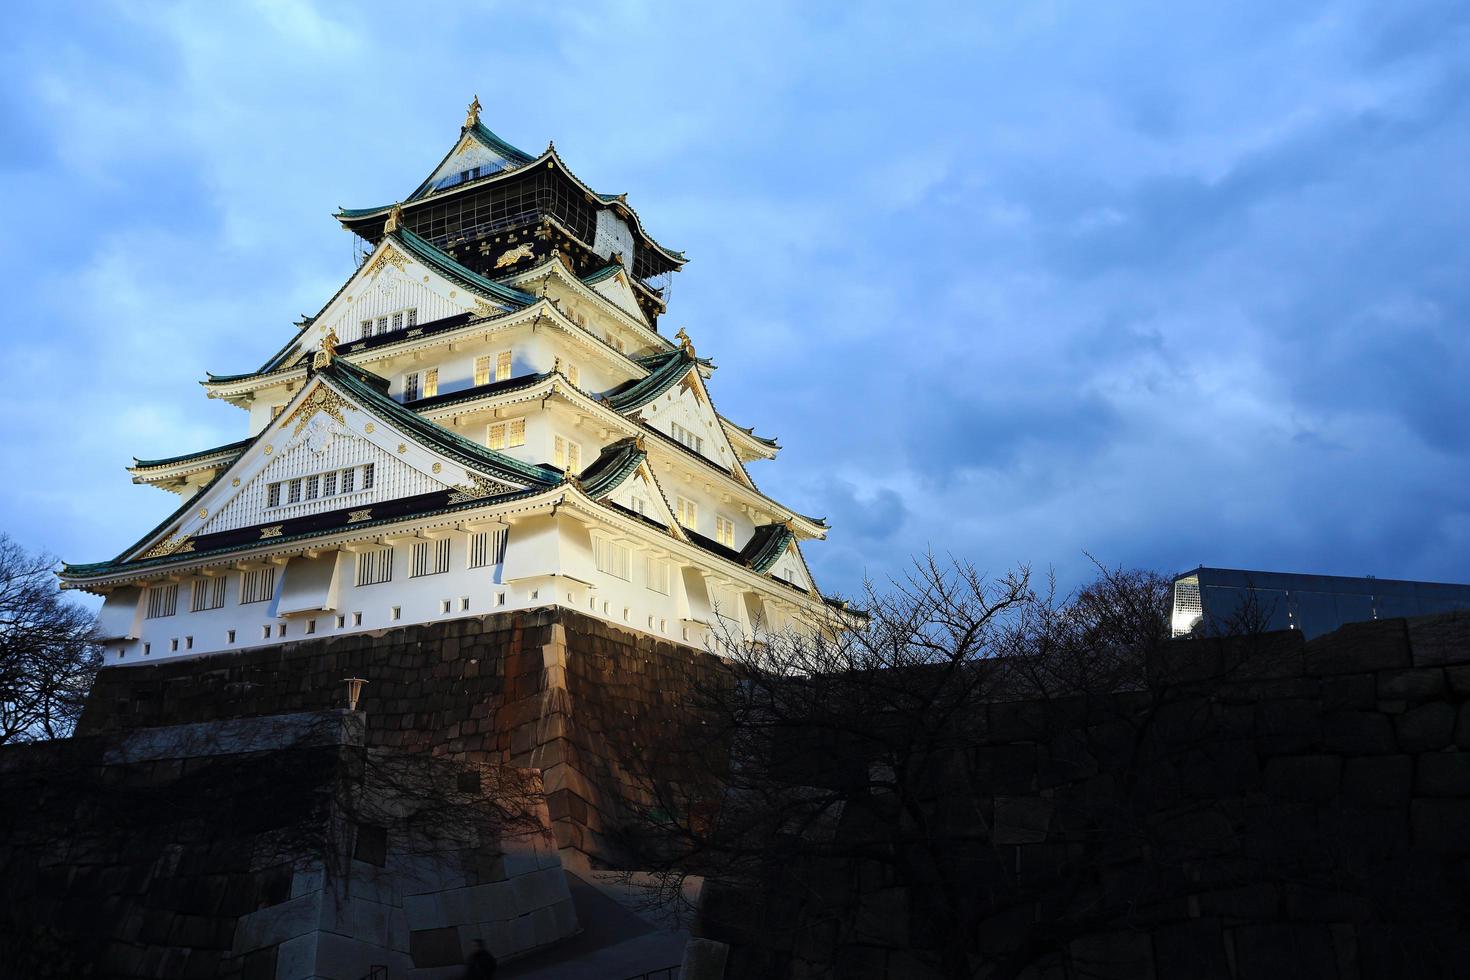 osaka kasteel in osaka, japan verlicht door schijnwerpers tijdens de schemering. foto